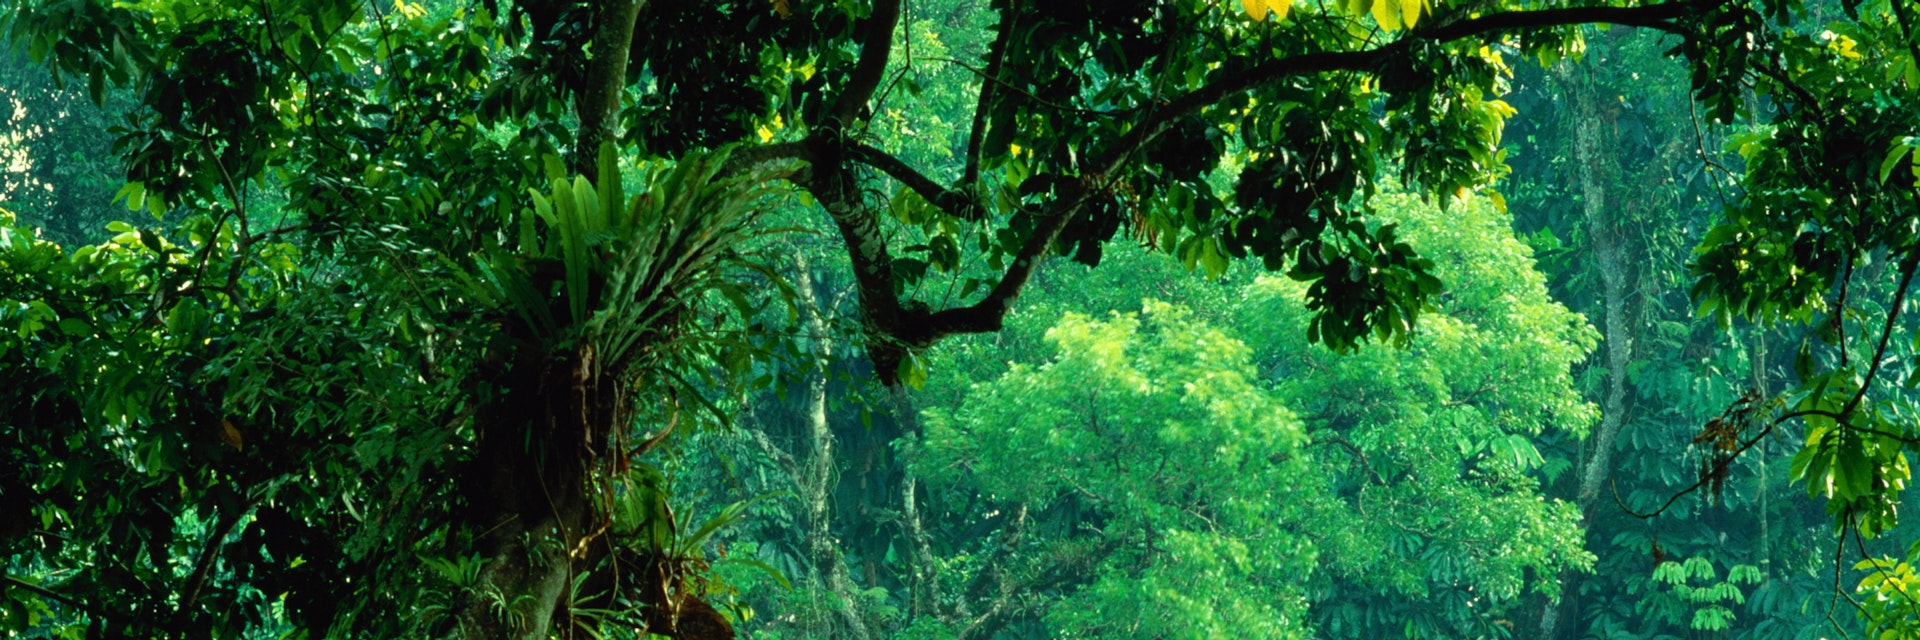 Indonesia, Java, Bogor, Kebun Raya (Great Garden), vegetation